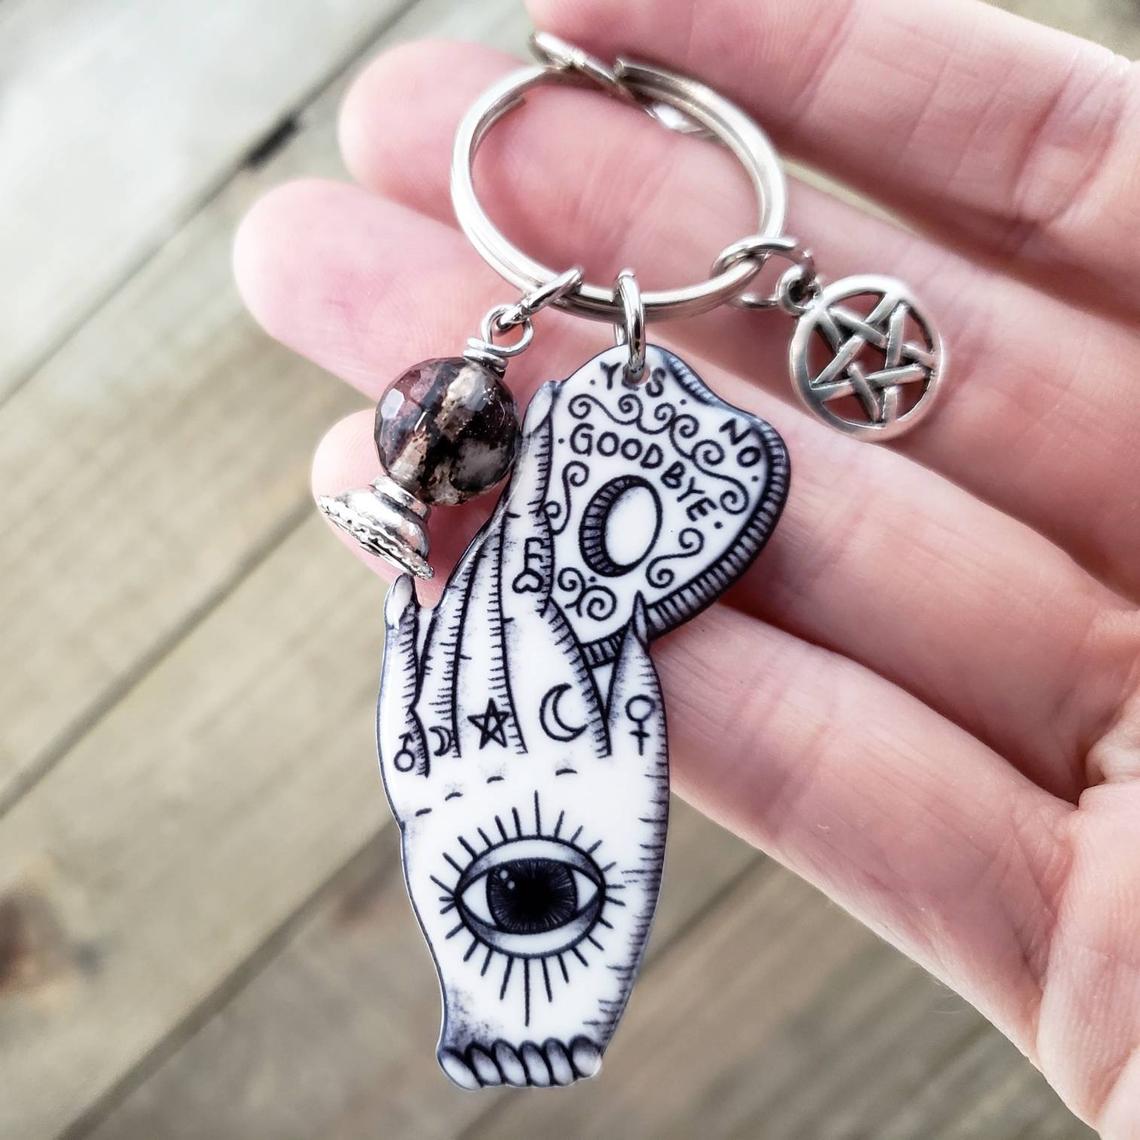 Witchy Ouija charm keychain